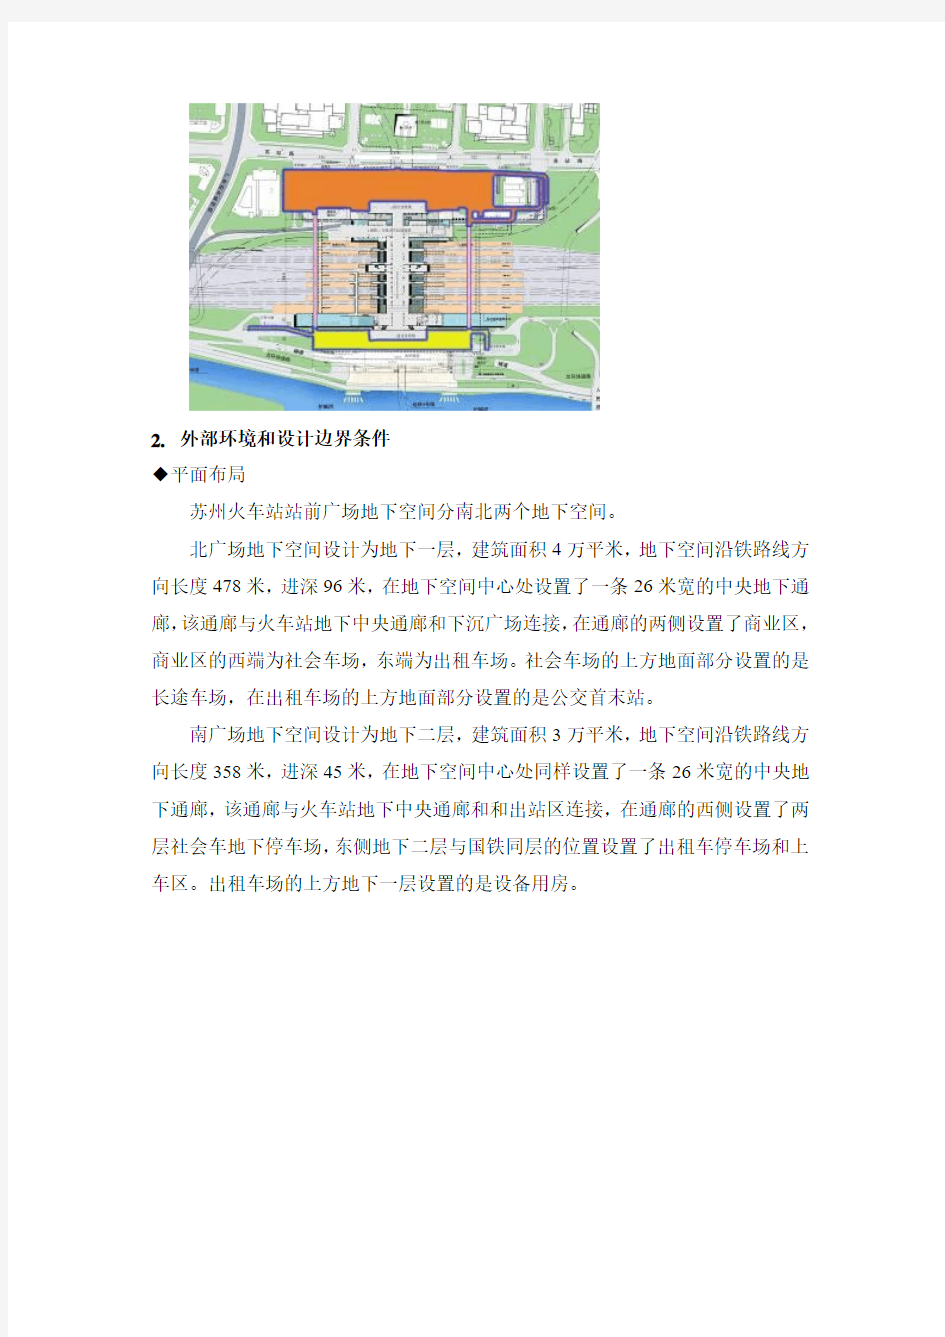 苏州火车站站前广场地下空间出租车场流线设计研究11